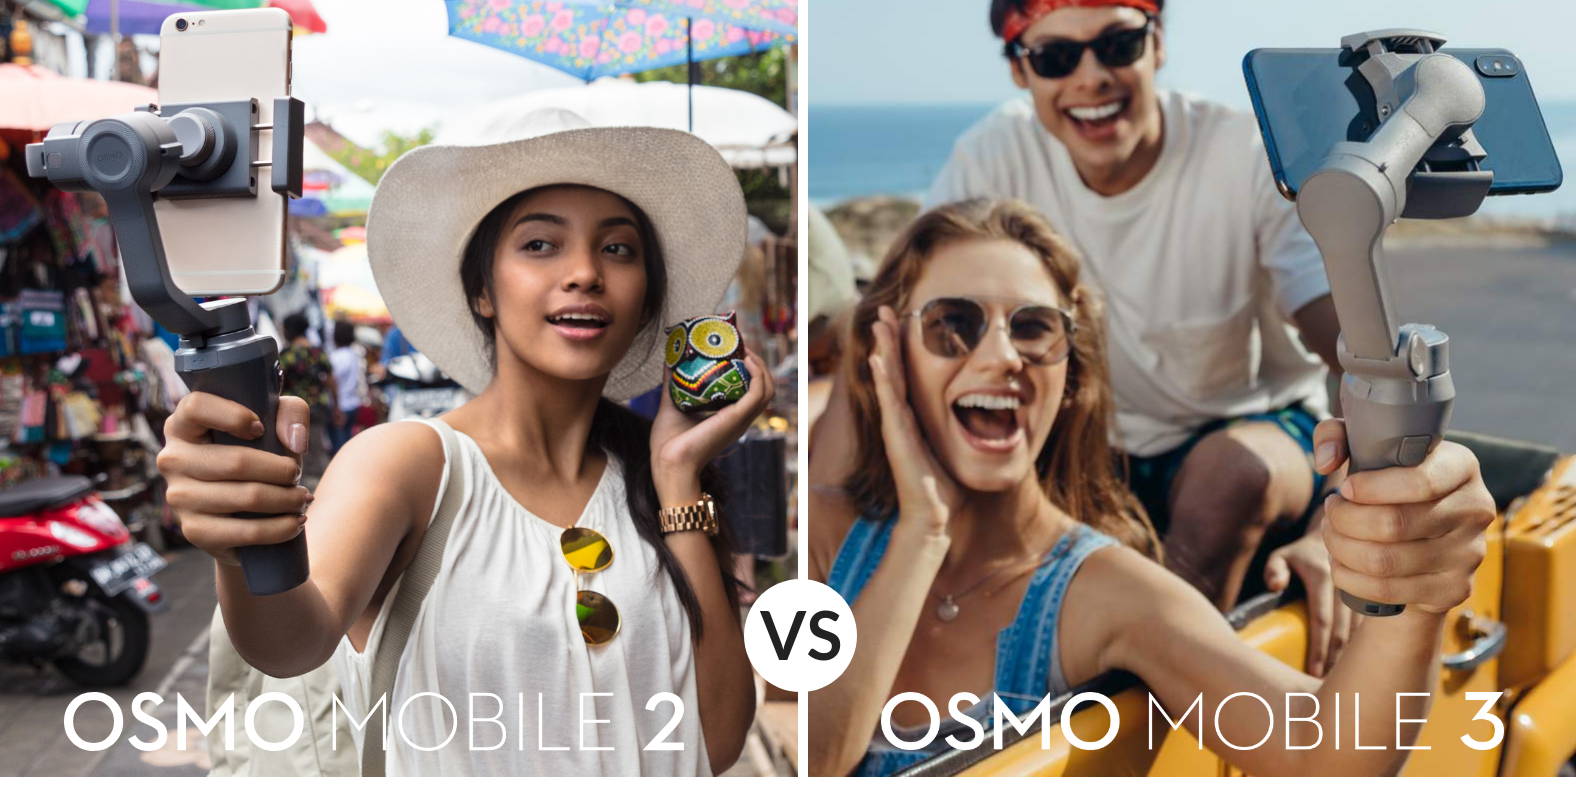 DJI Osmo Mobile 3 vs DJI Osmo Mobile 2 Comparison